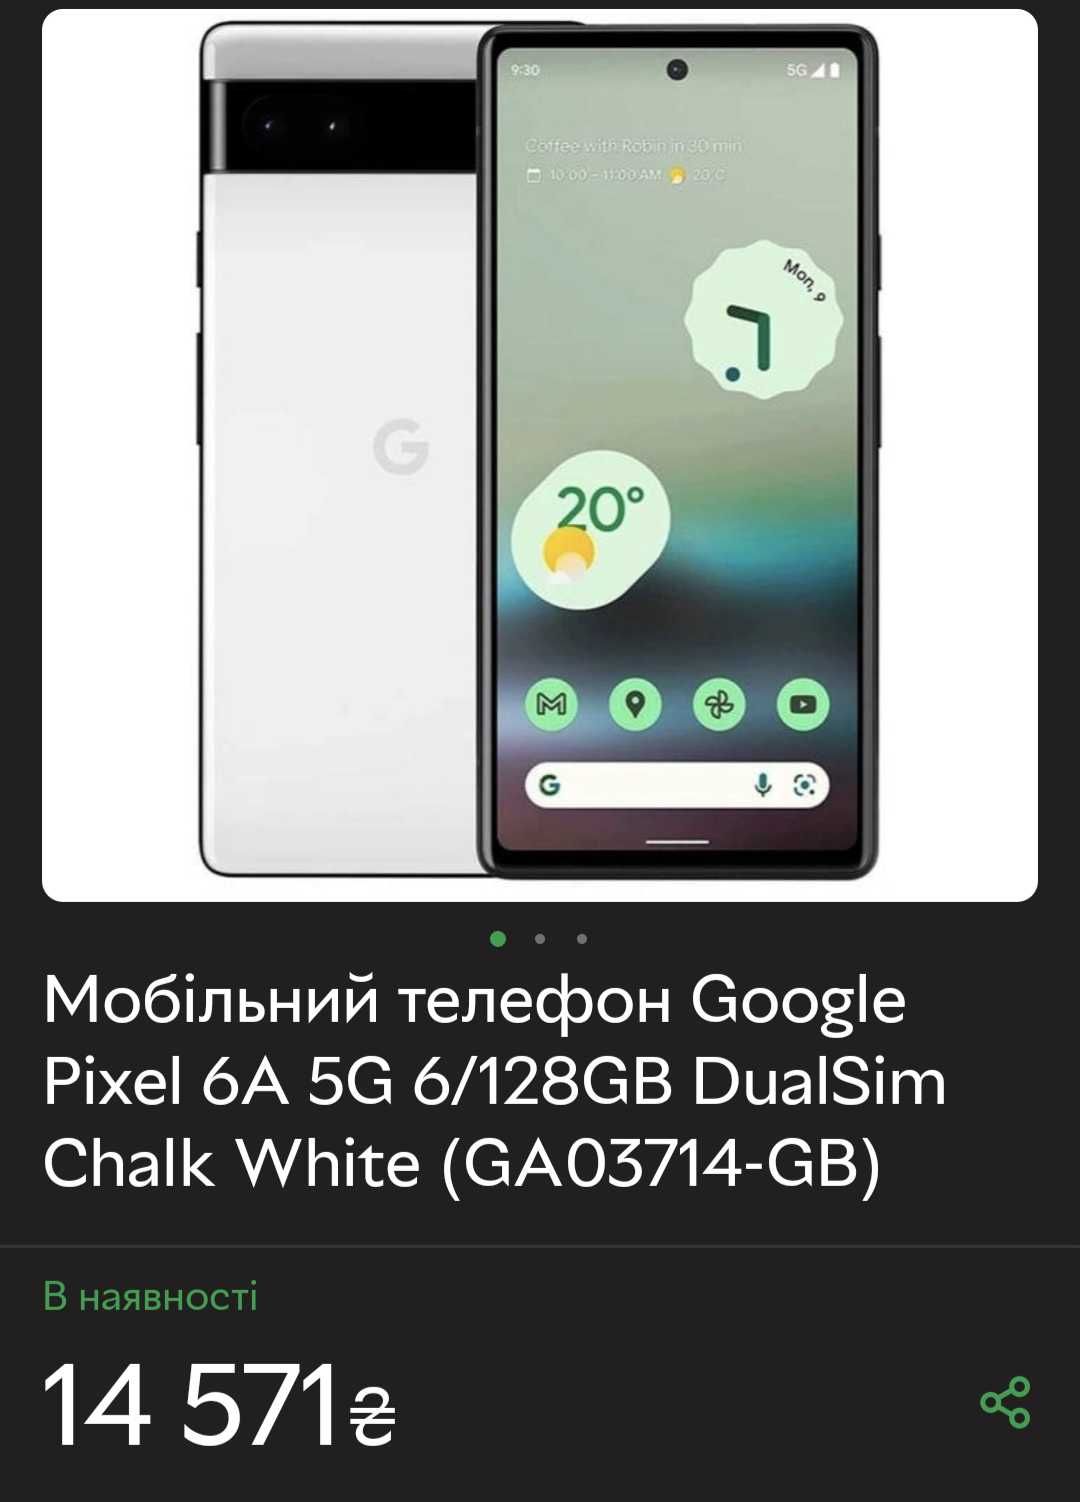 Телефон Європа Google pixel 6a